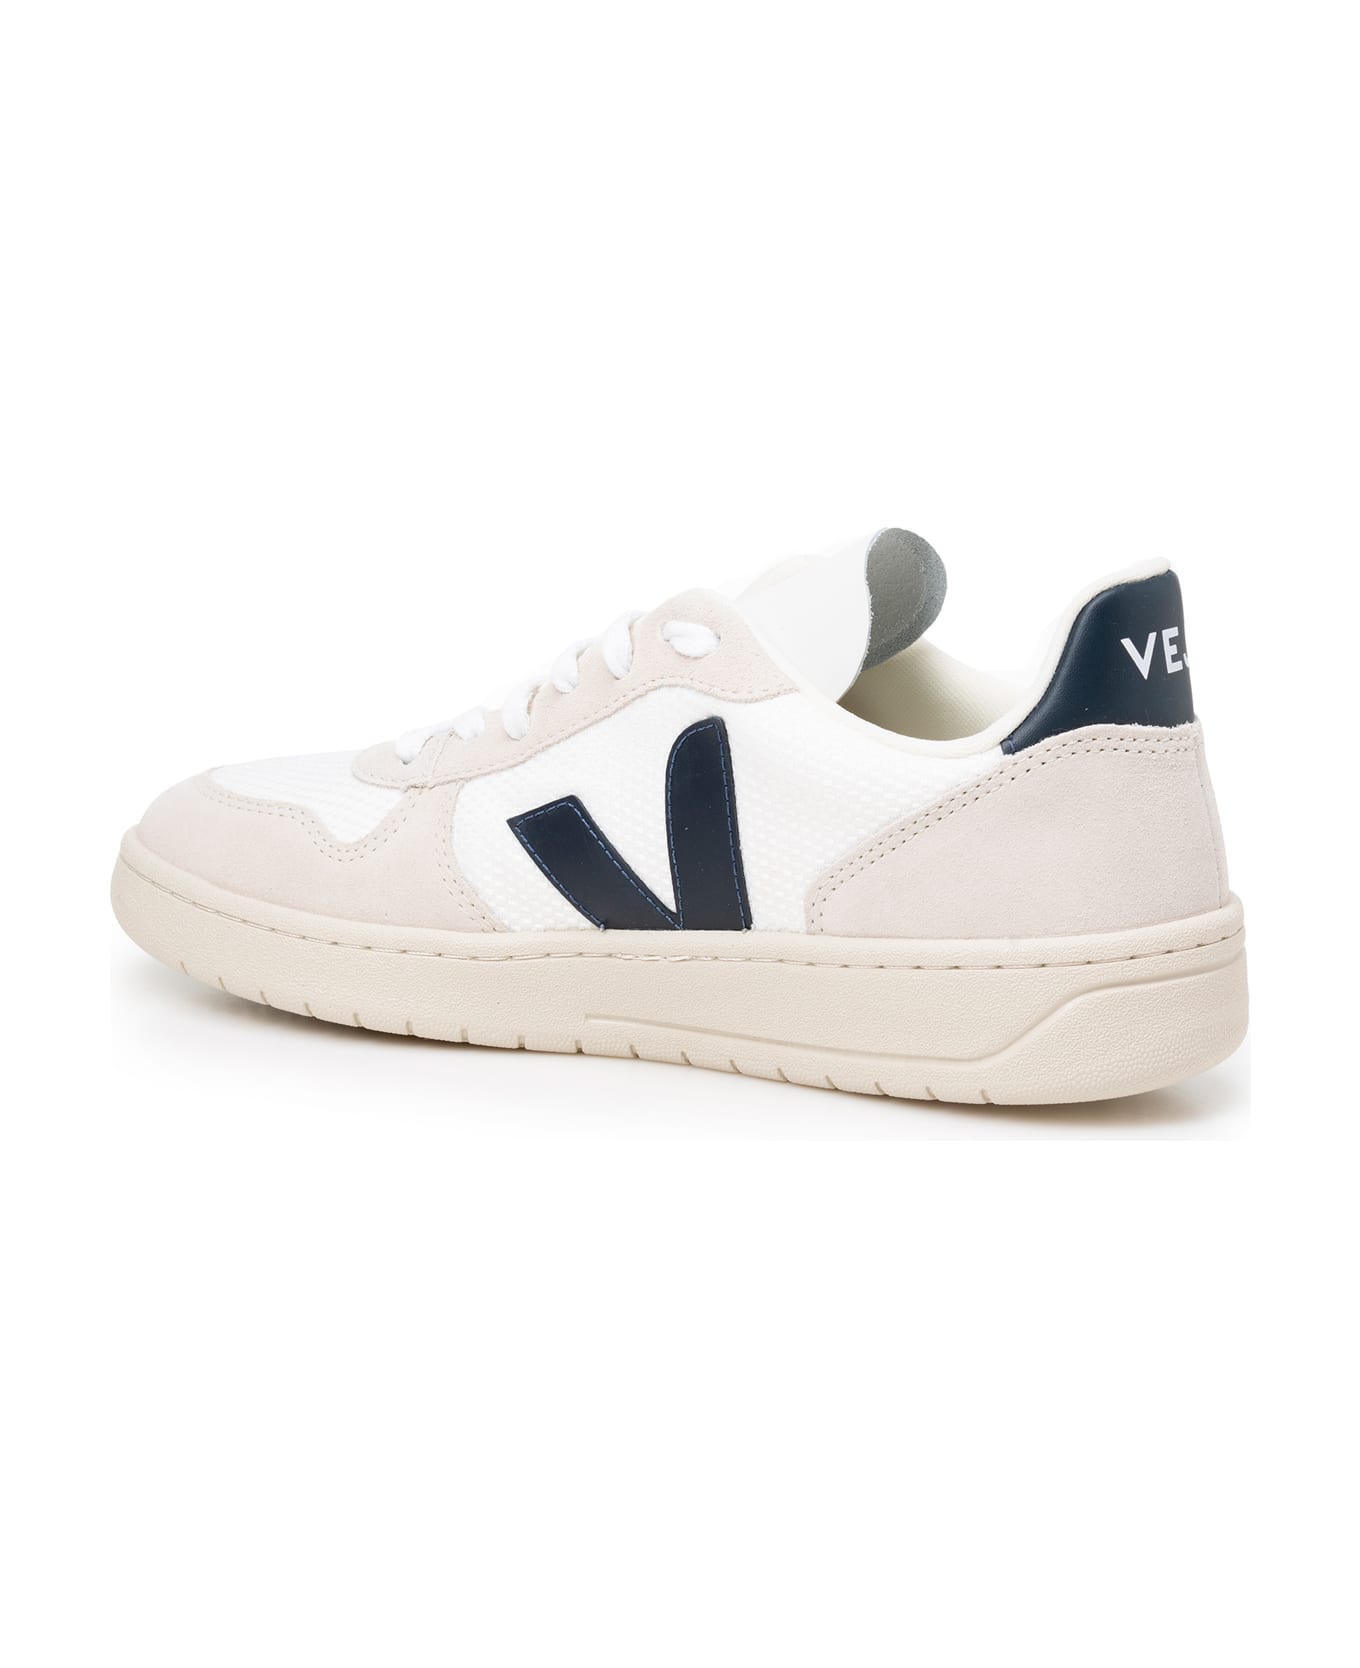 Veja Sneakers - White/nautico